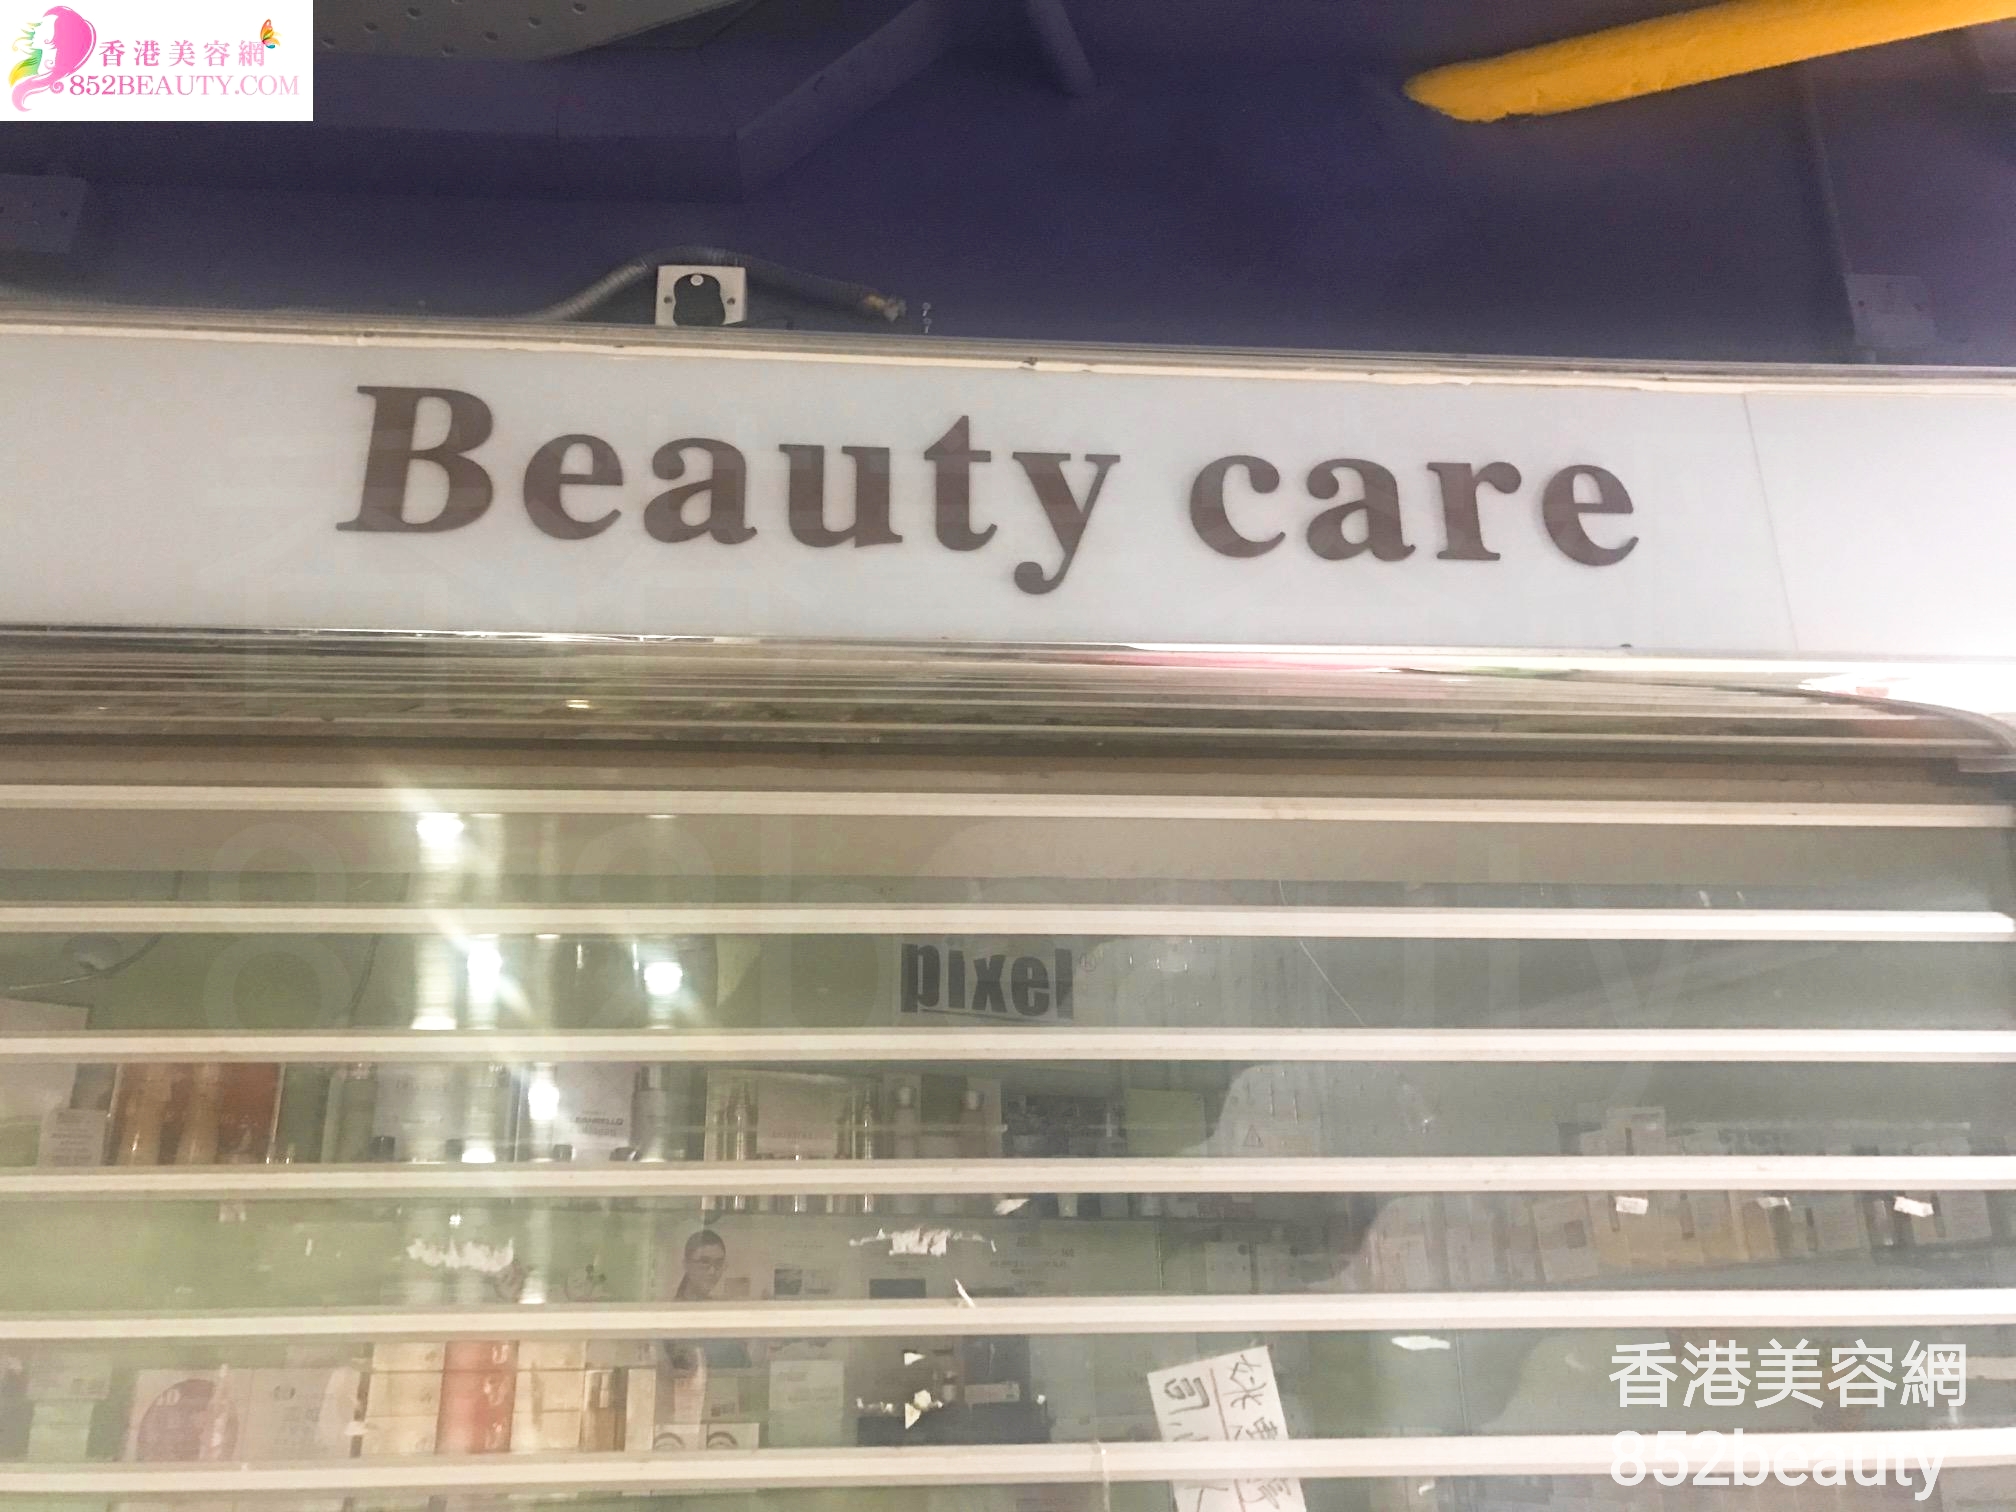 手脚护理: Beauty care